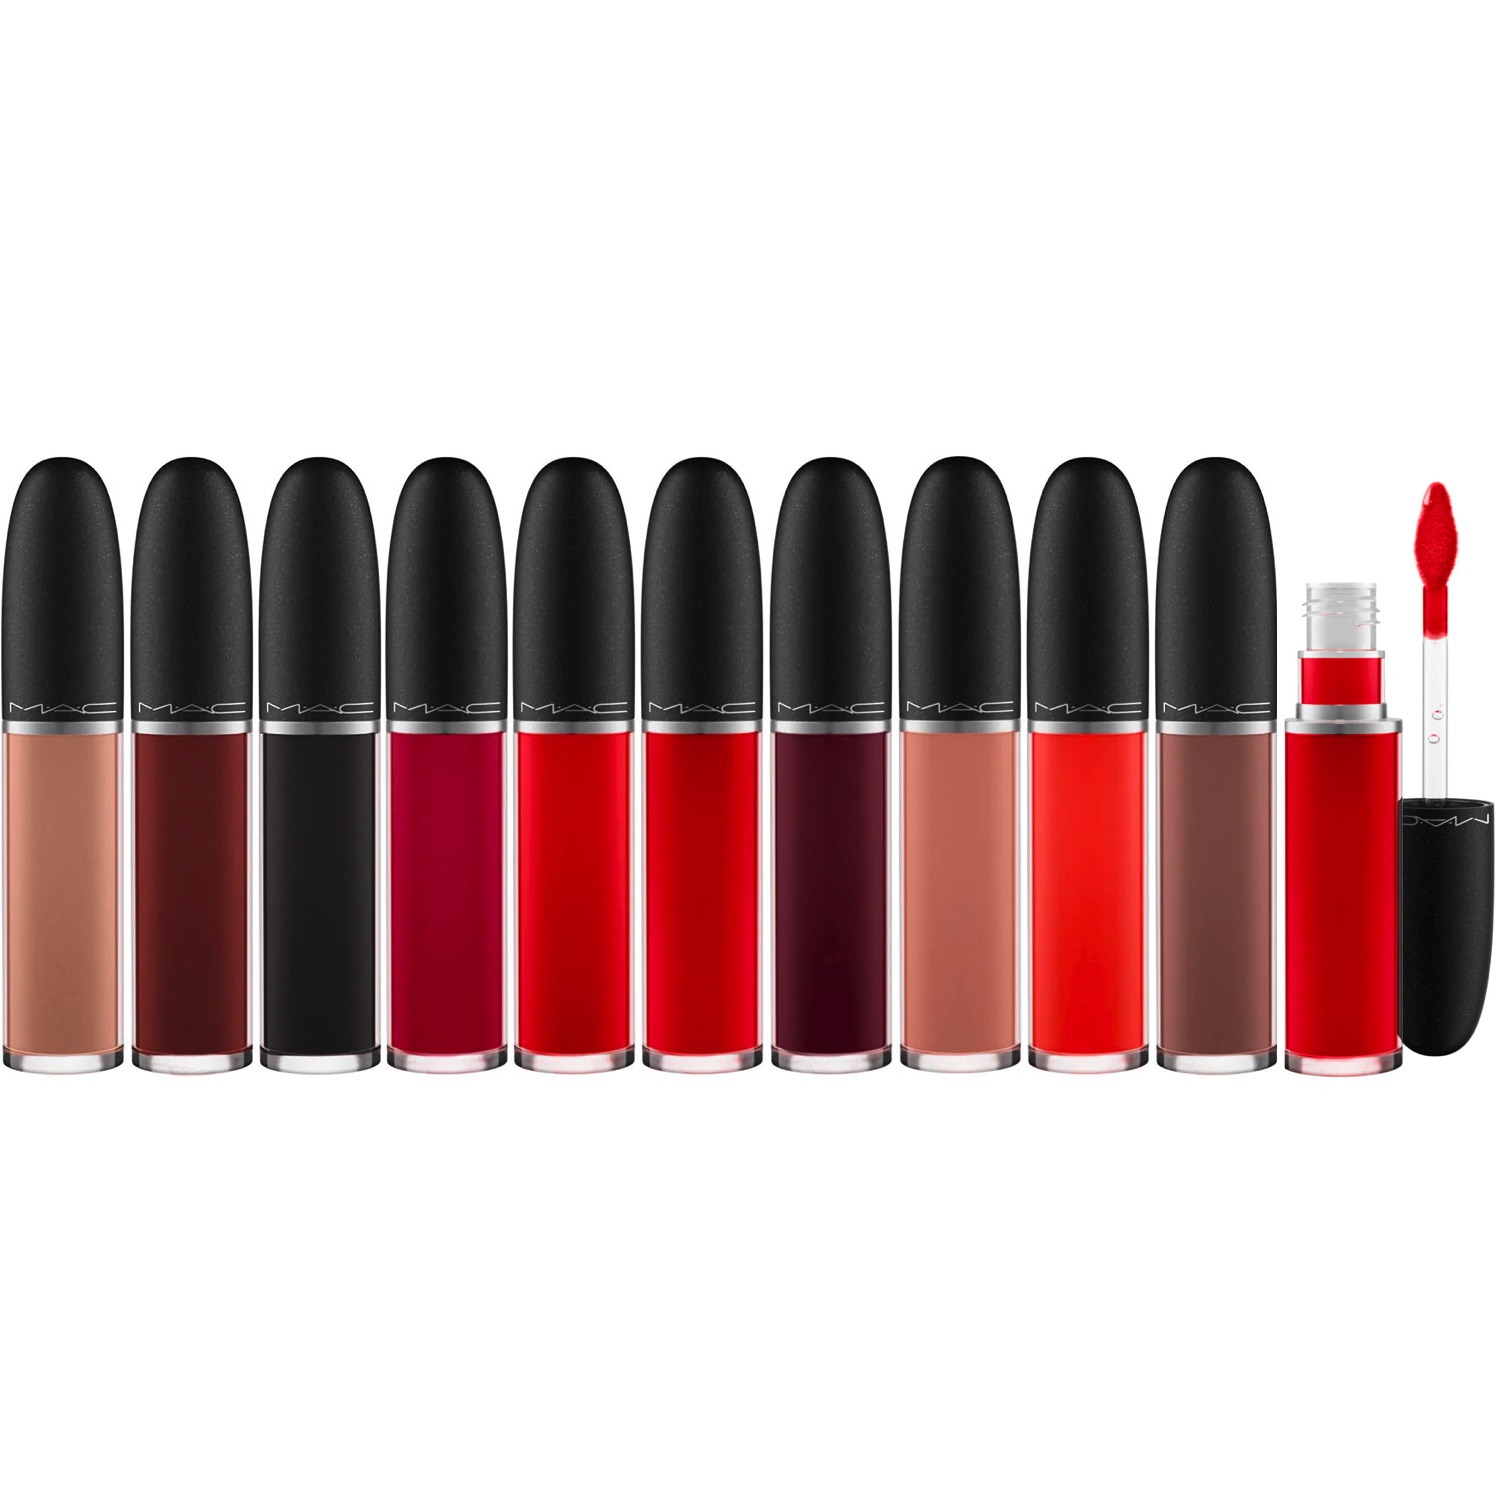 MAC Retro Matte Liquid Lipcolour Lipstick Erfahrungen Review Test kaufen Deutschland bestellen Rabattcode billiger Preisvergleich